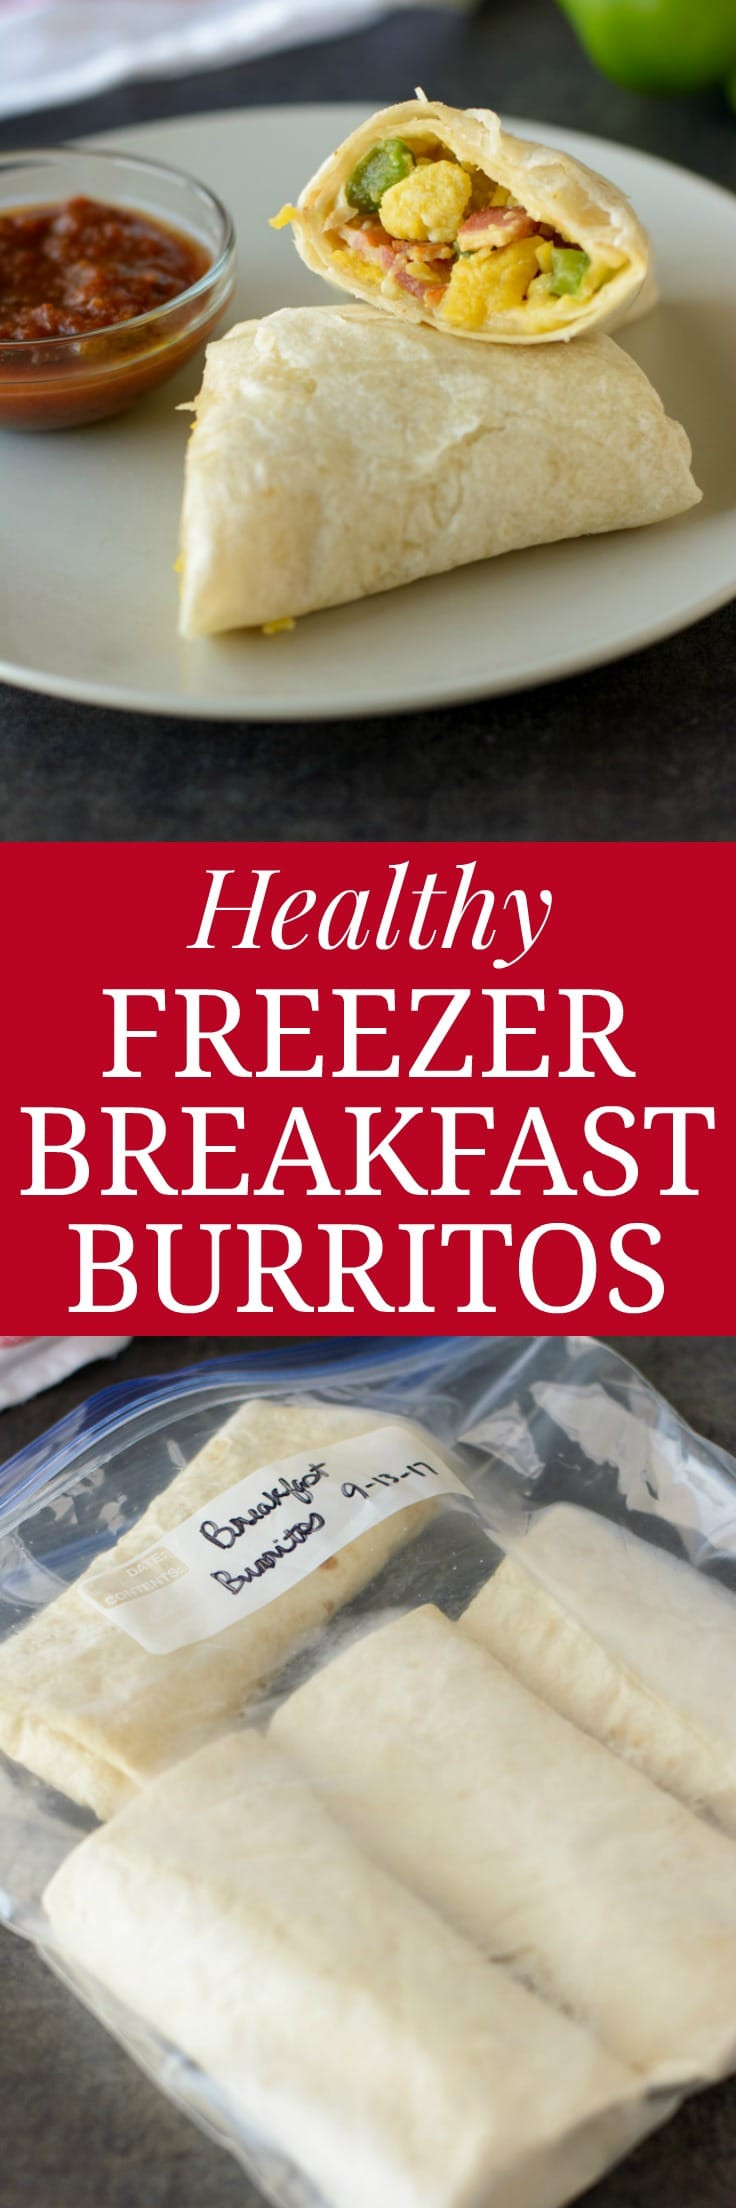 Healthy Freezer Breakfast Burritos
 Healthy Freezer Breakfast Burritos Healthier Dishes